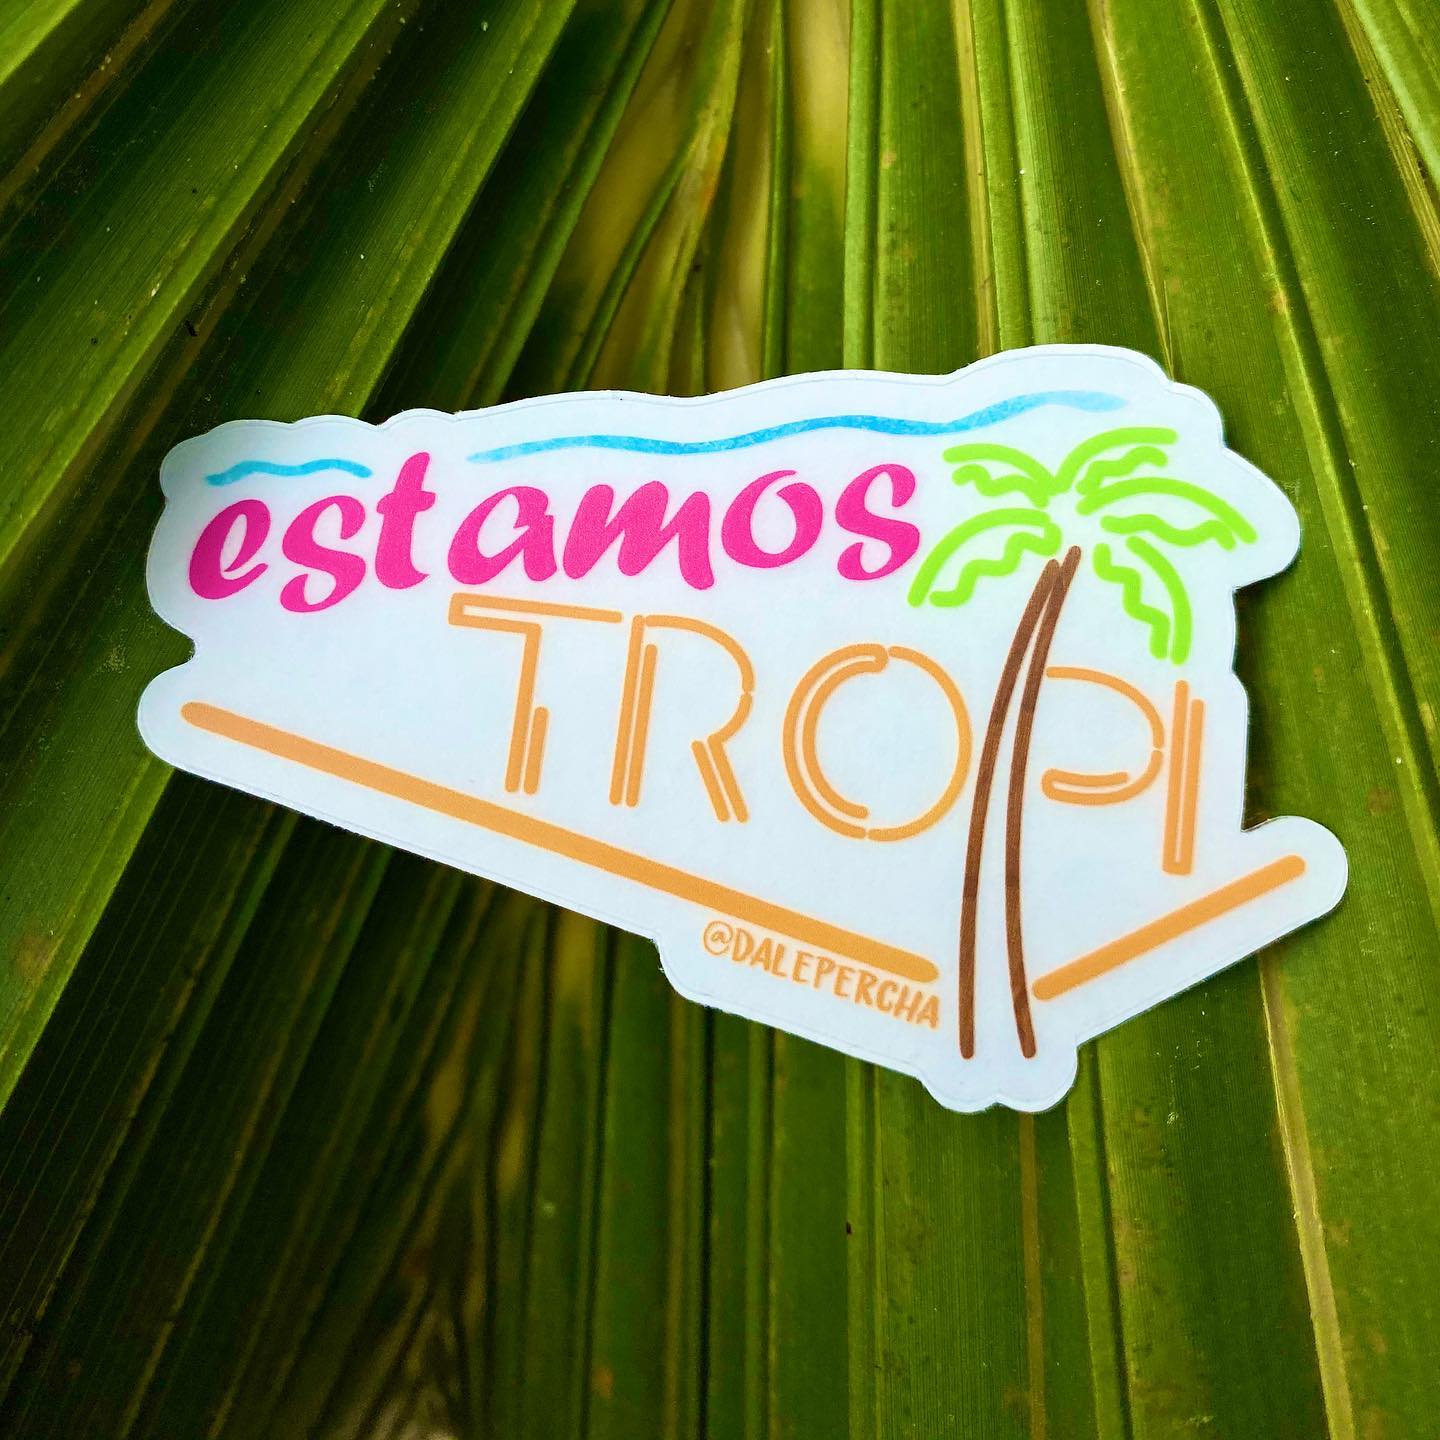 Estamos Tropi- Sticker